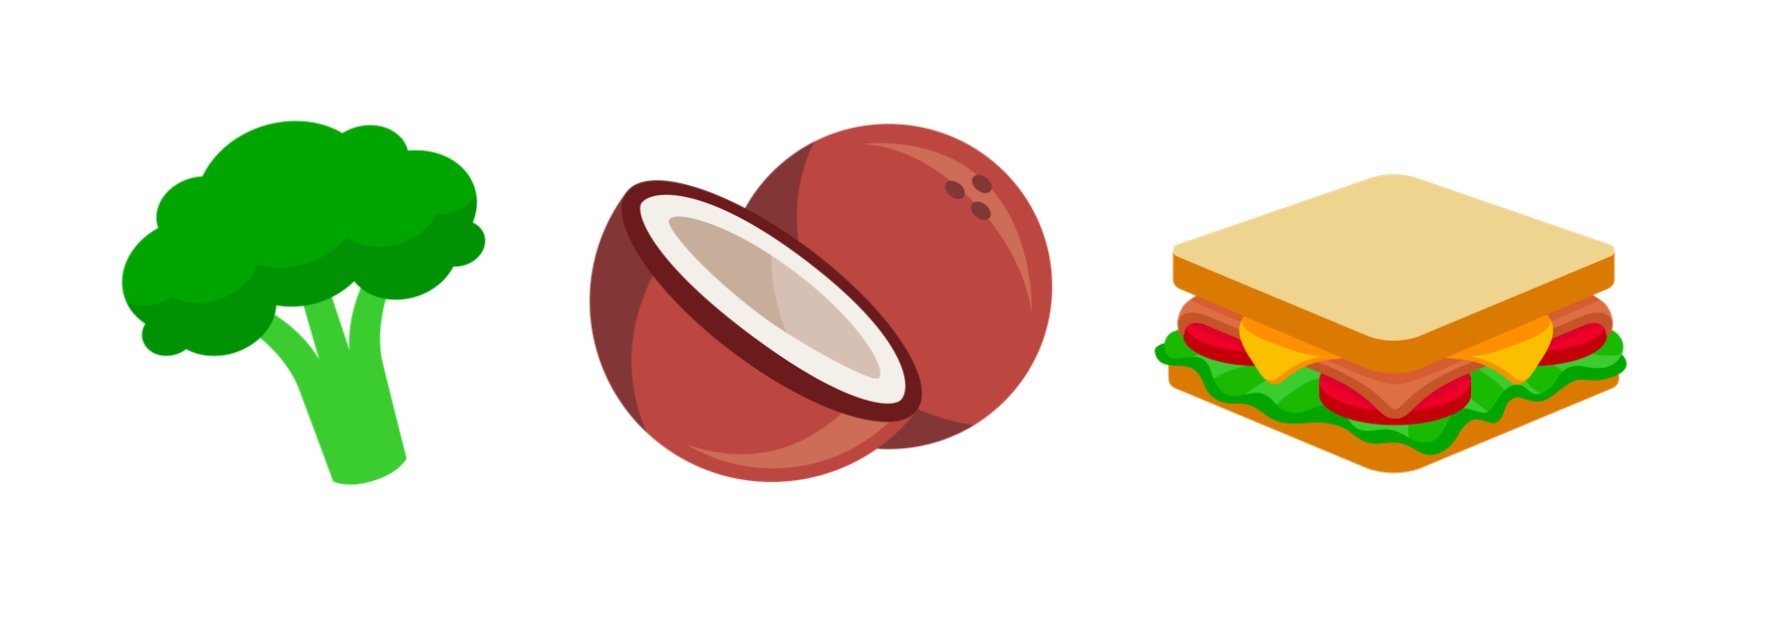 emoji-2017-unicode-10-food-emoji-additions-emojipedia